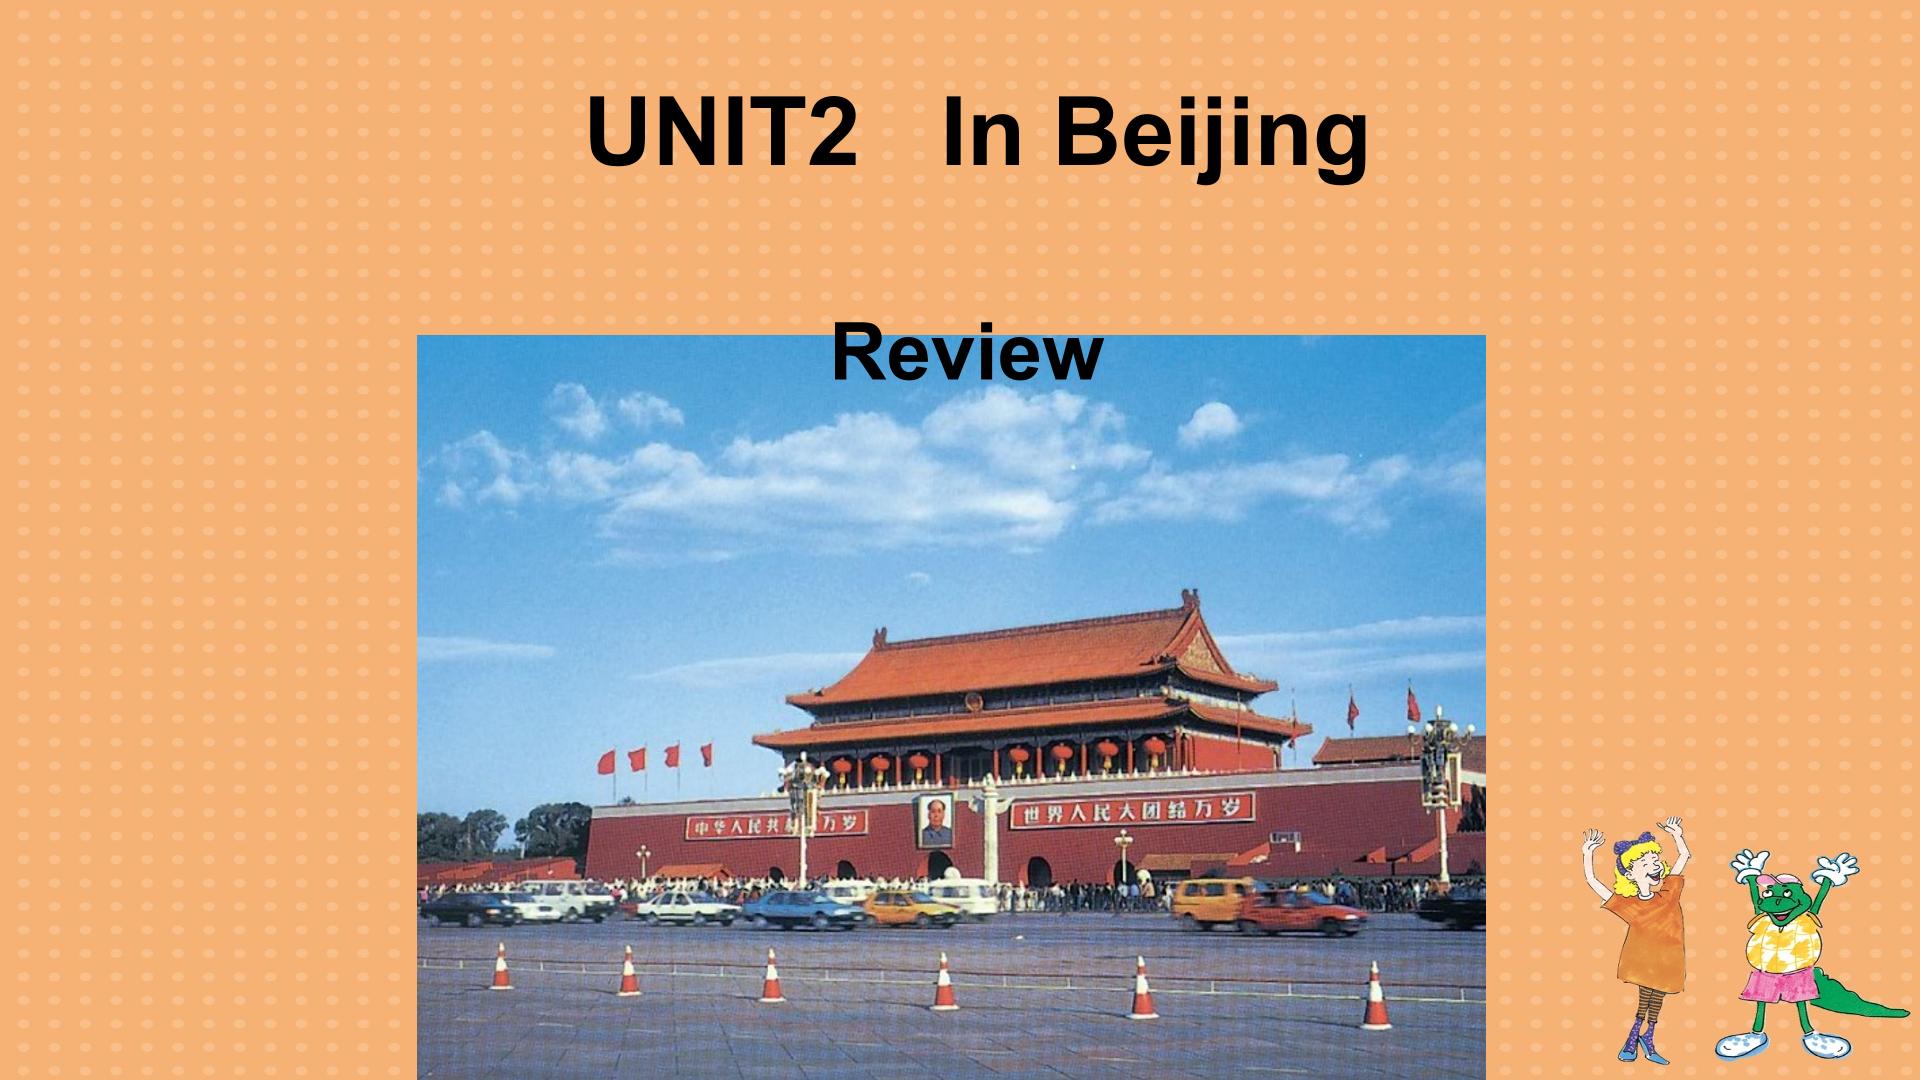 In Beijing review